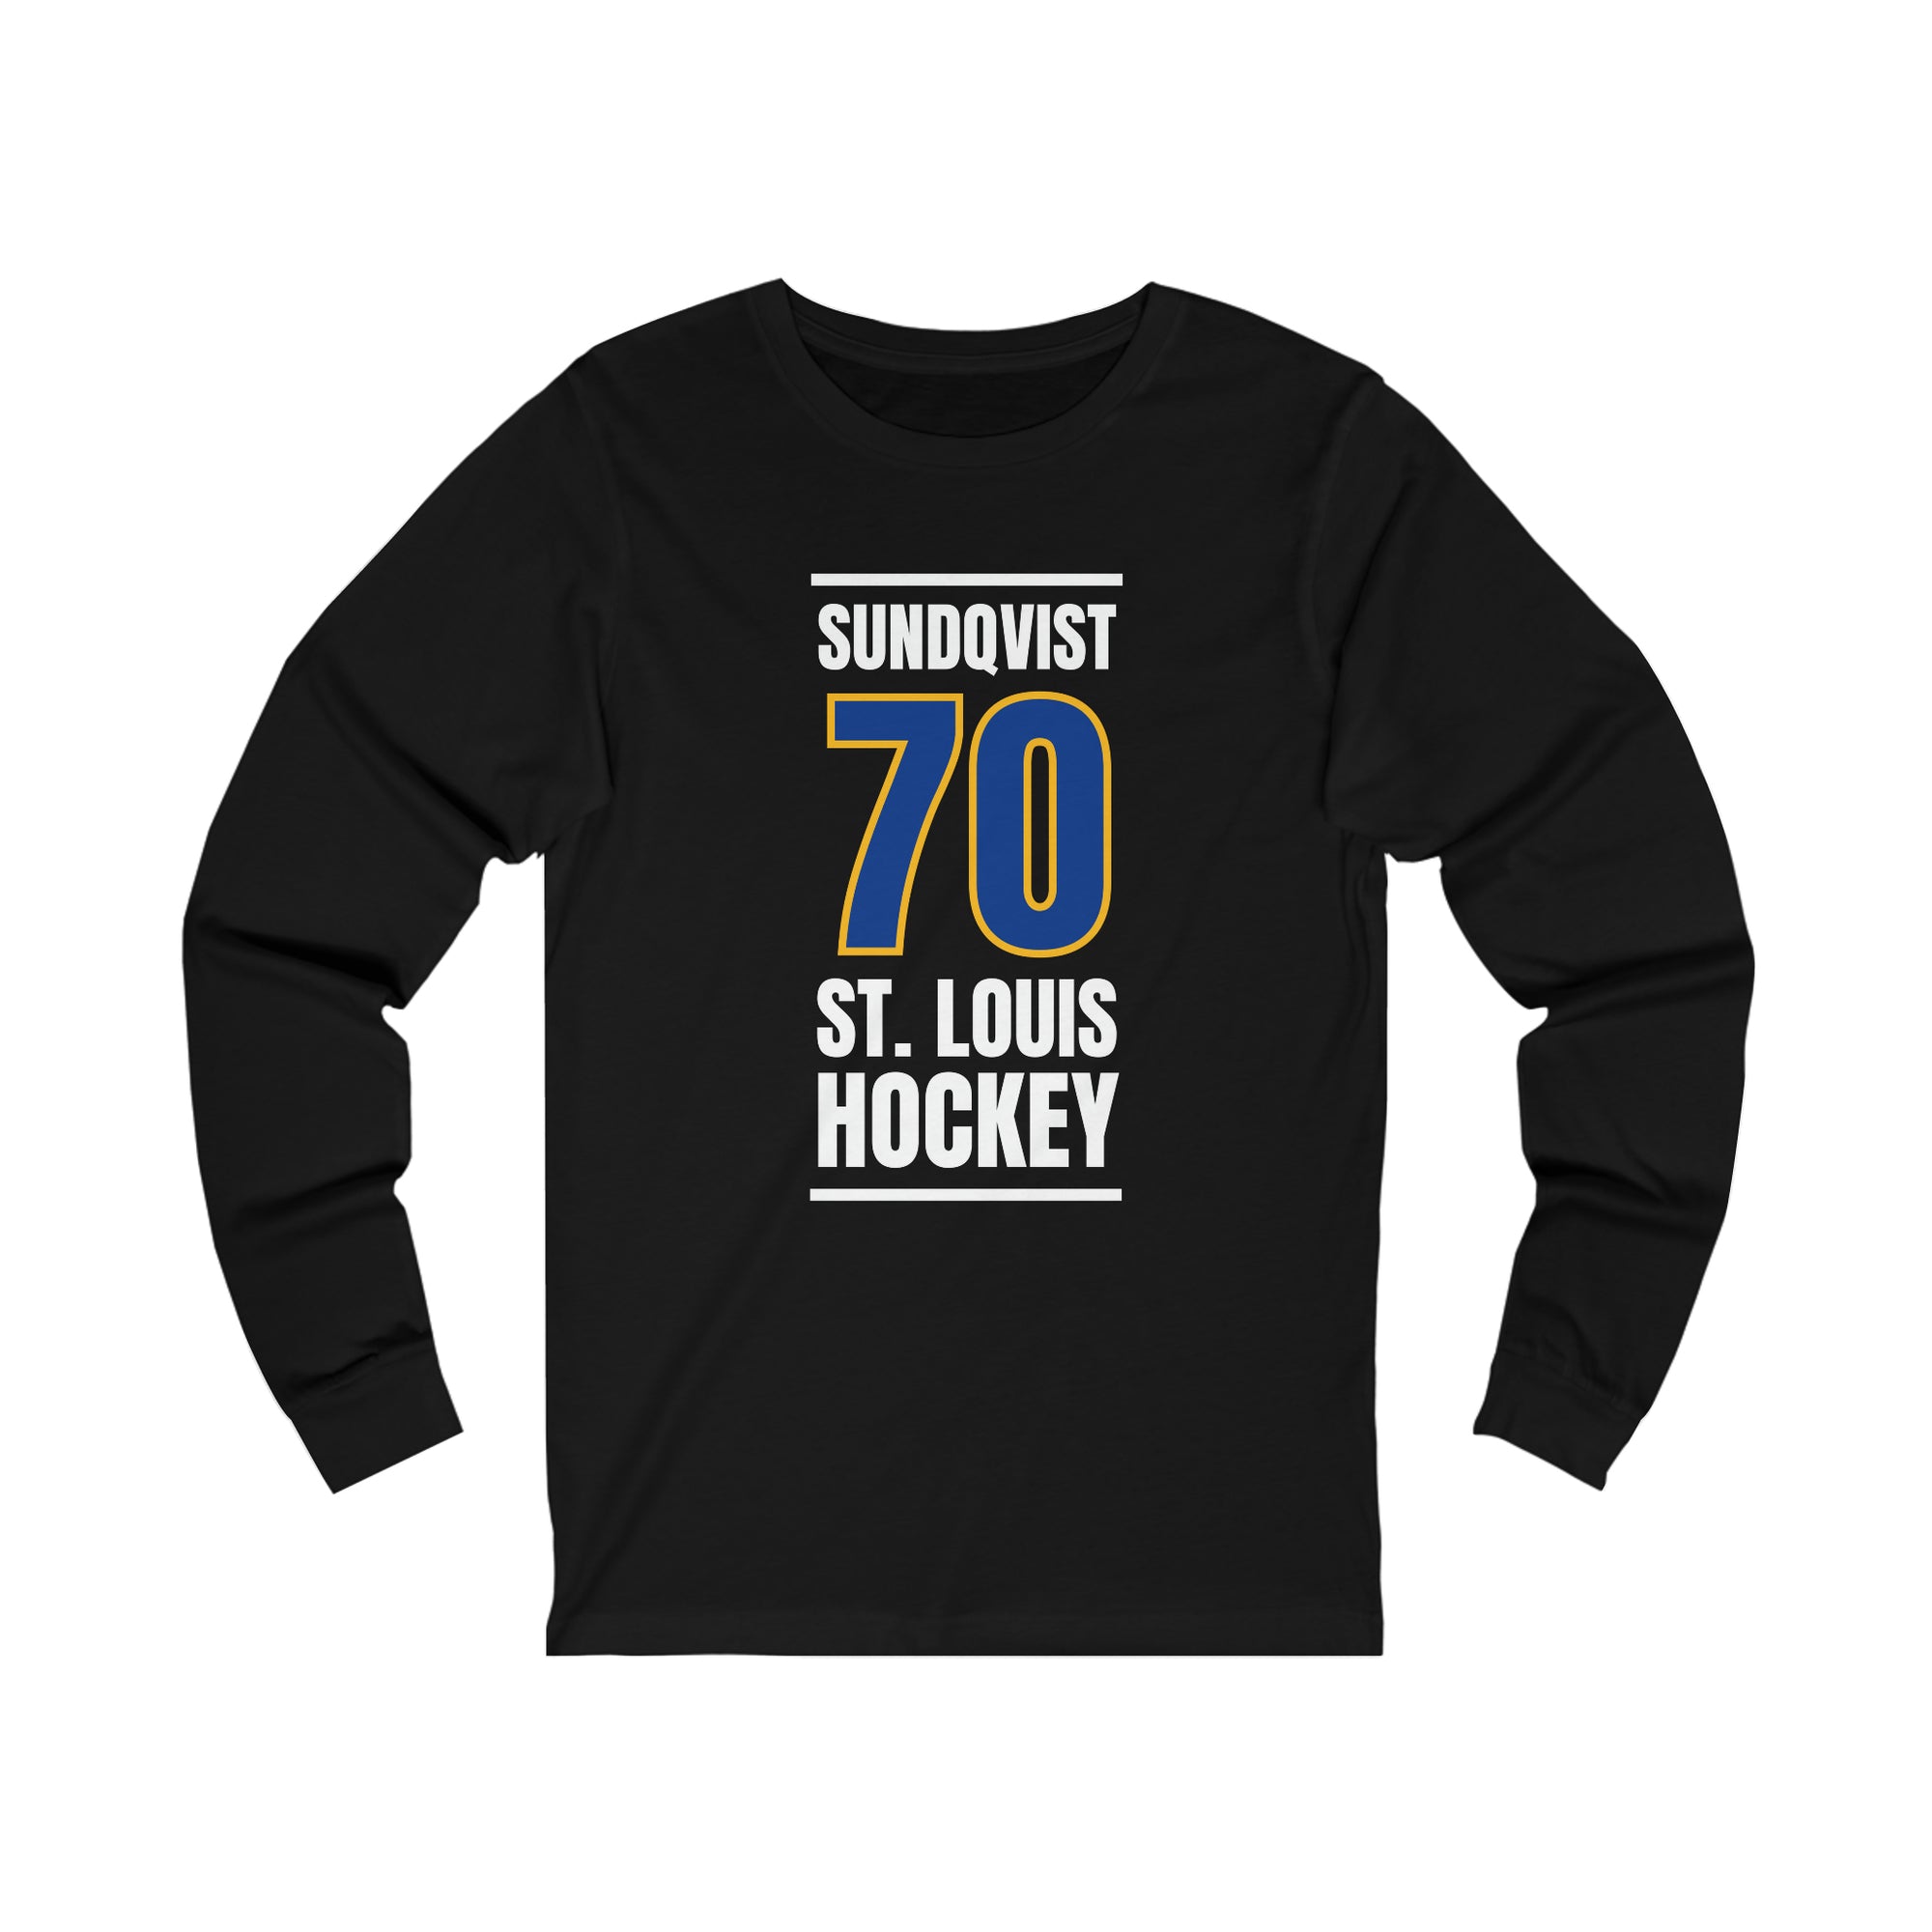 Sundqvist 70 St. Louis Hockey Blue Vertical Design Unisex Jersey Long Sleeve Shirt